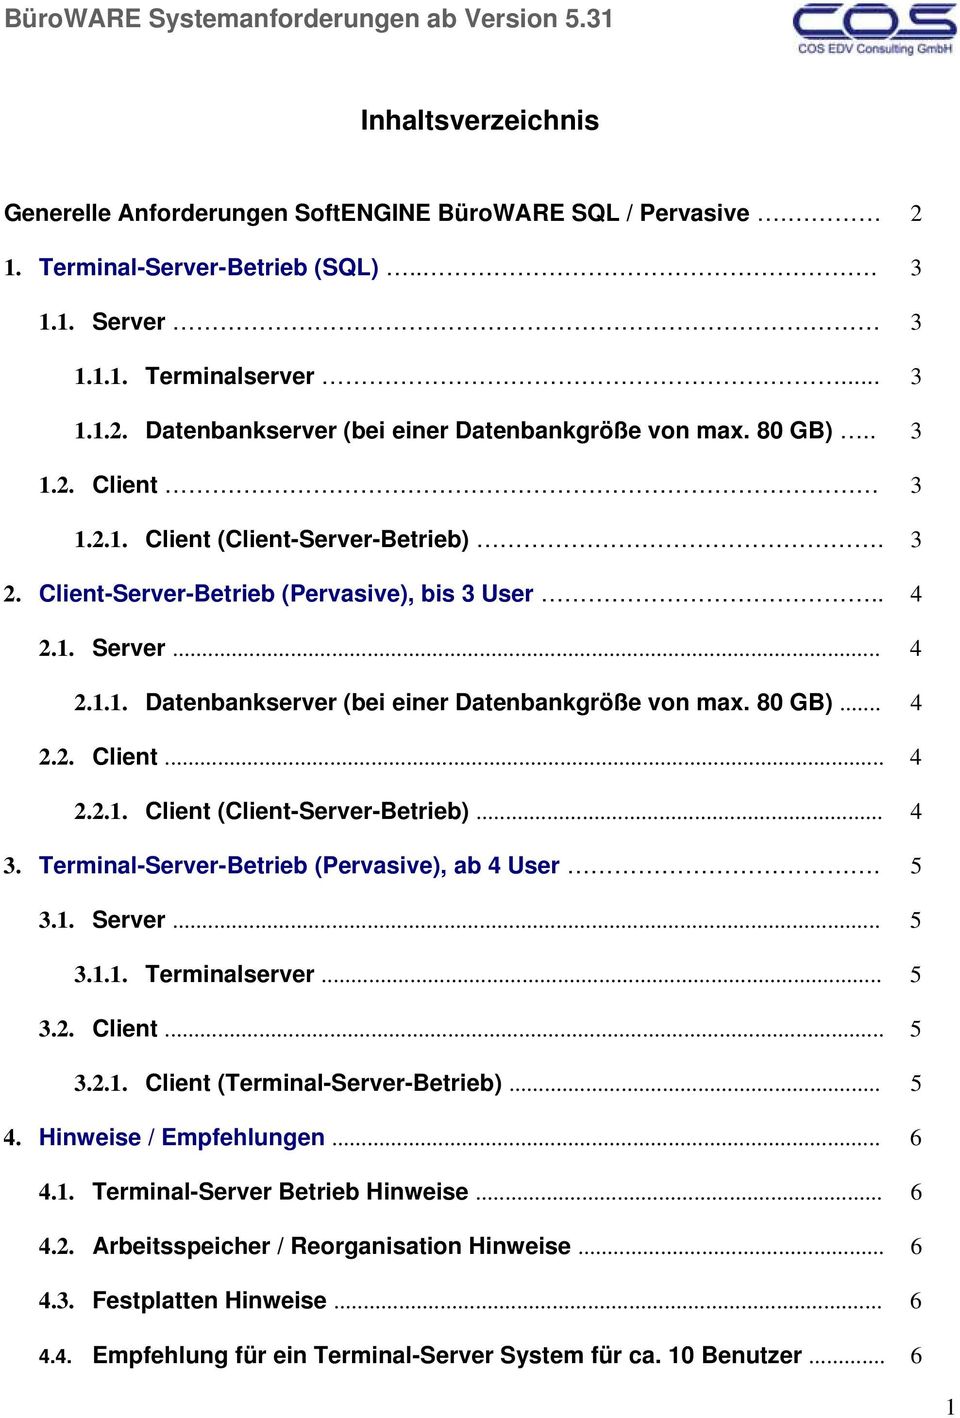 80 GB)... 4 2.2. Client... 4 2.2.1. Client (Client-Server-Betrieb)... 4 3. Terminal-Server-Betrieb (Pervasive), ab 4 User. 5 3.1. Server... 5 3.1.1. Terminalserver... 5 3.2. Client... 5 3.2.1. Client (Terminal-Server-Betrieb).